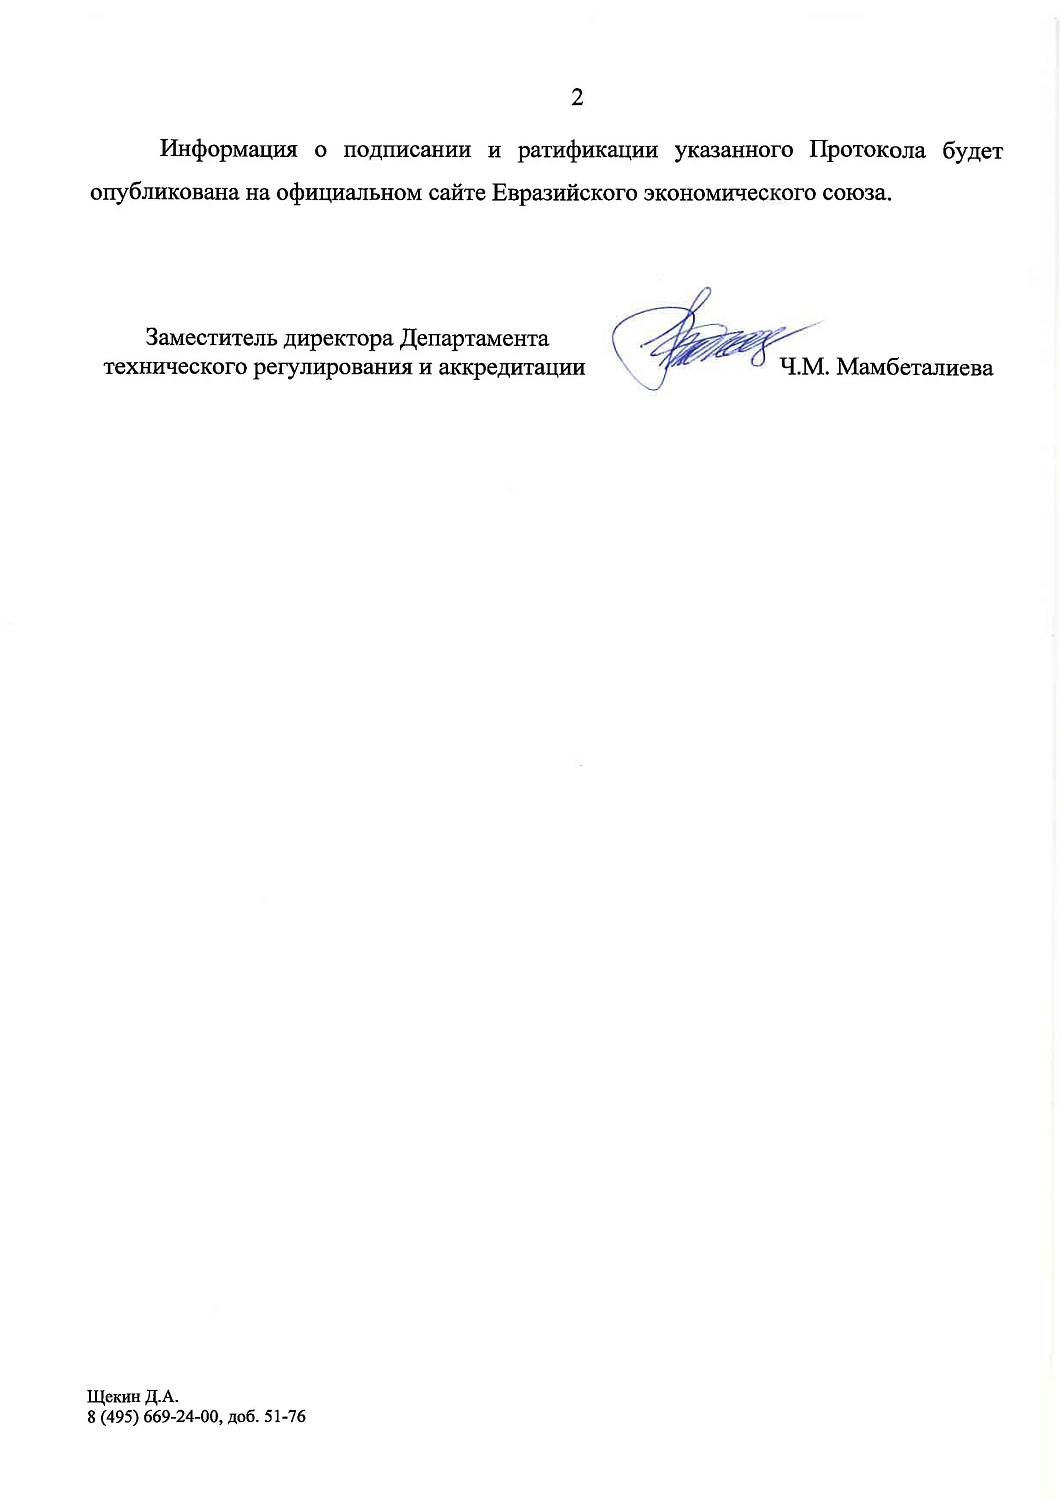 Обращение медицинских изделий по индивидуальным заказам в РФ и ЕАЭС: разбираемся вместе